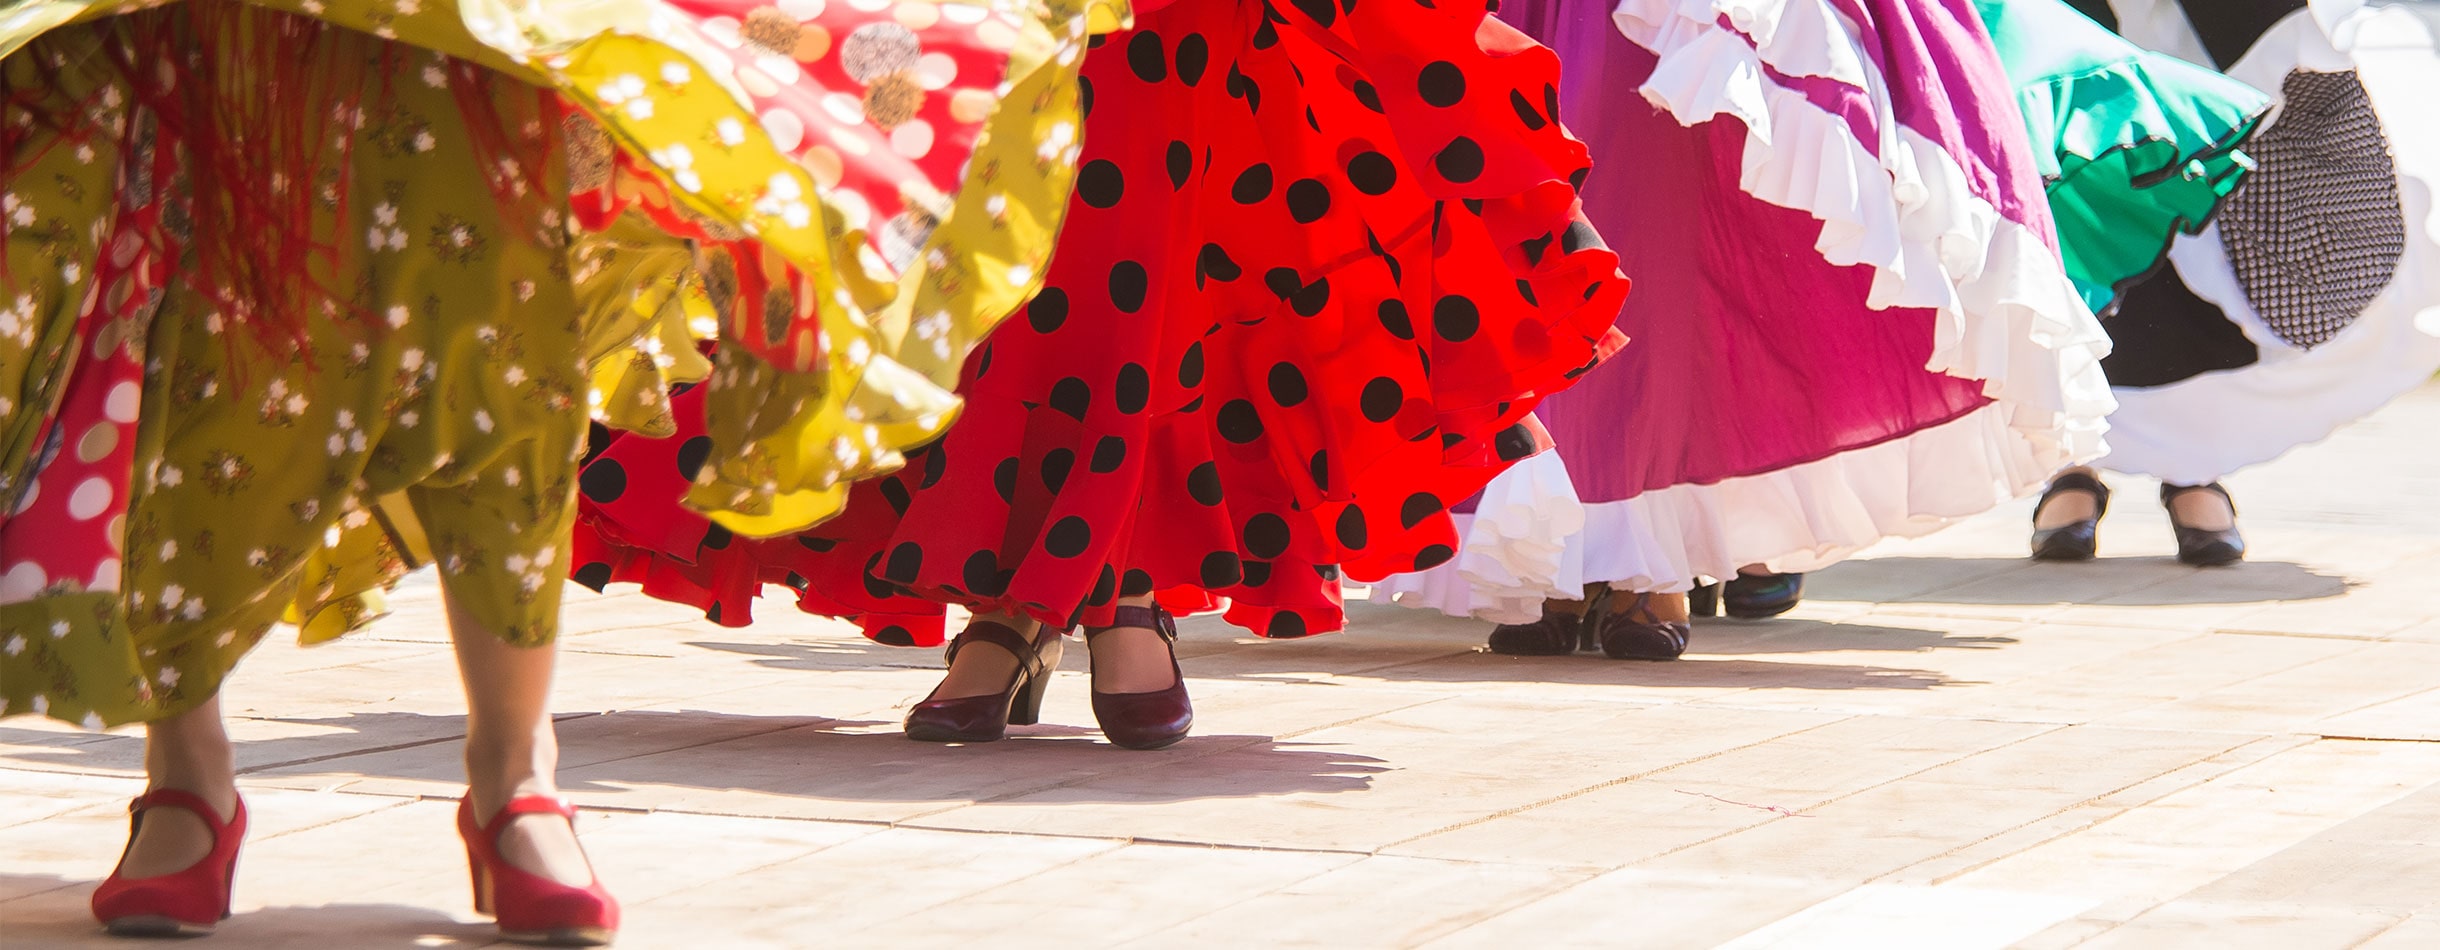 Flamenco dancers, Spain